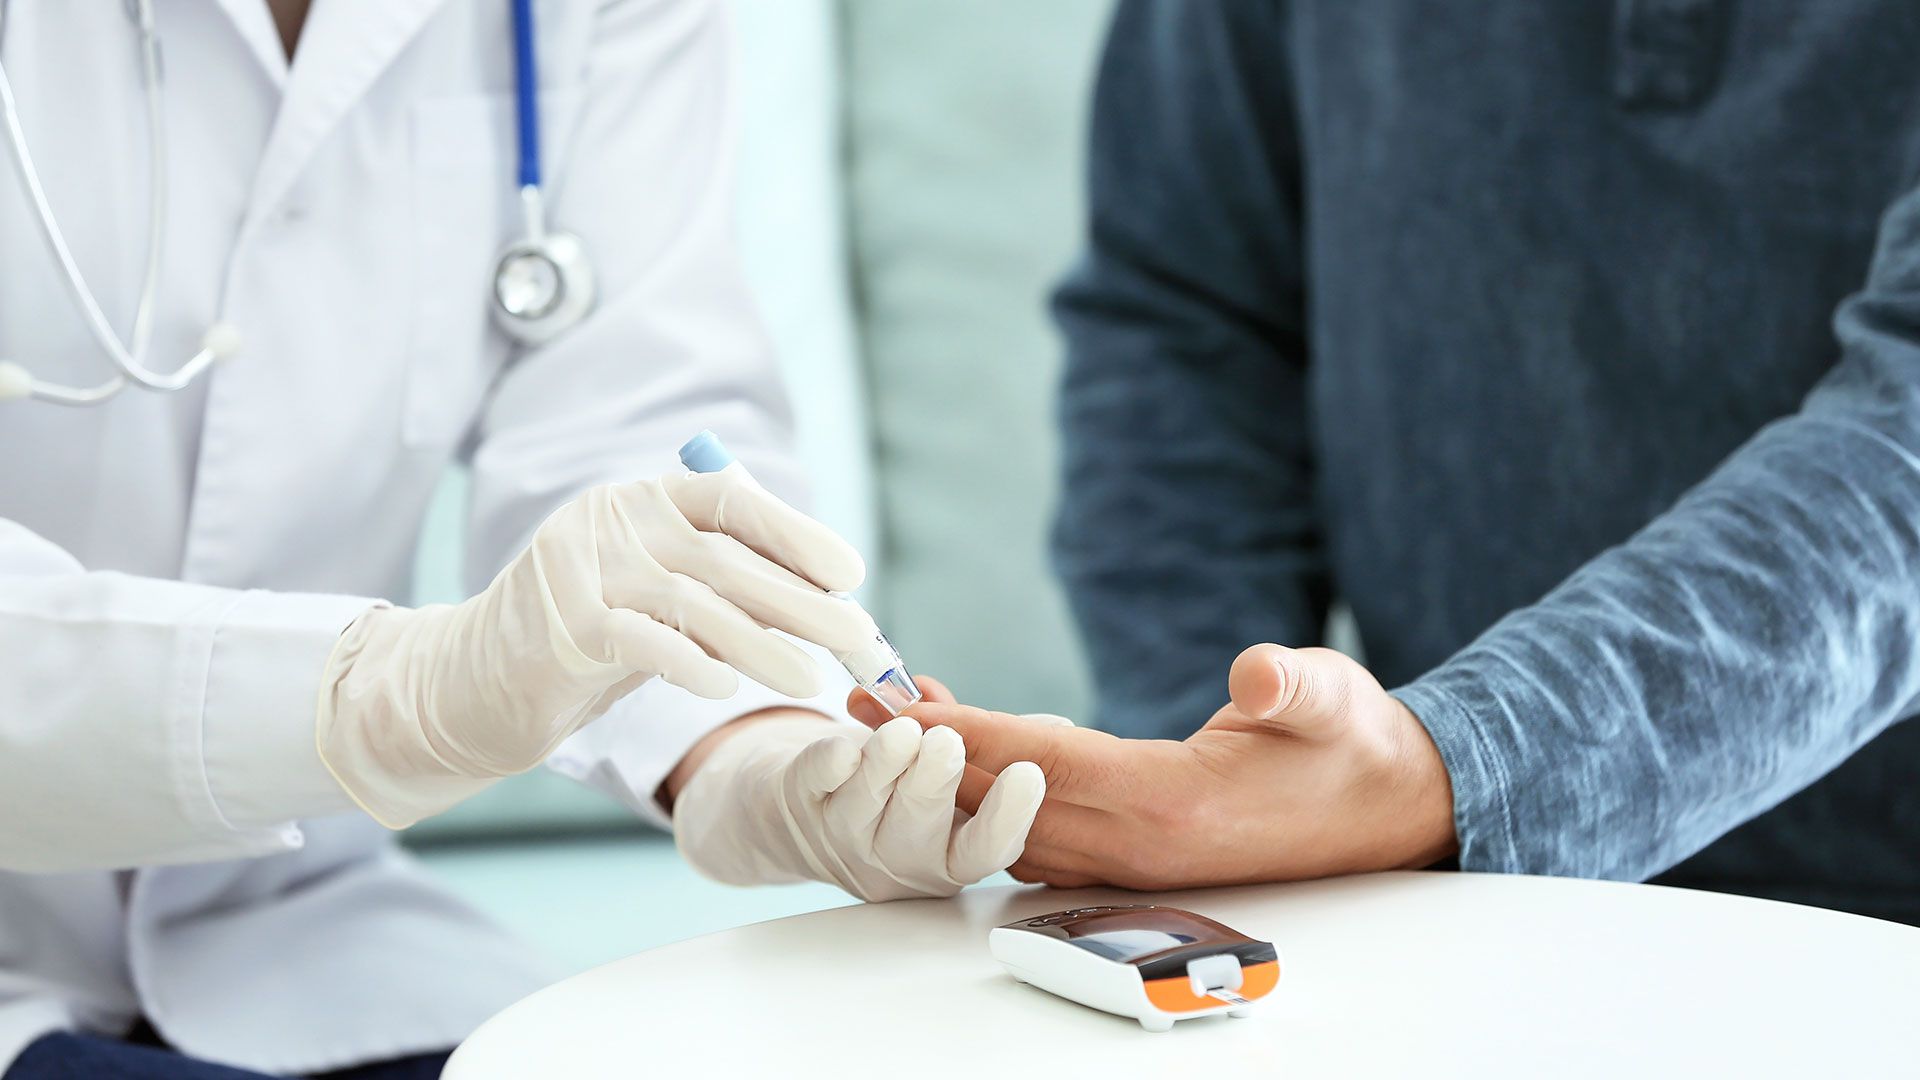 Con la diabetes, sistema inmunológico del paciente está disminuido, lo cual complica el tratamiento del coronavirus. (Foto: Shutterstock)